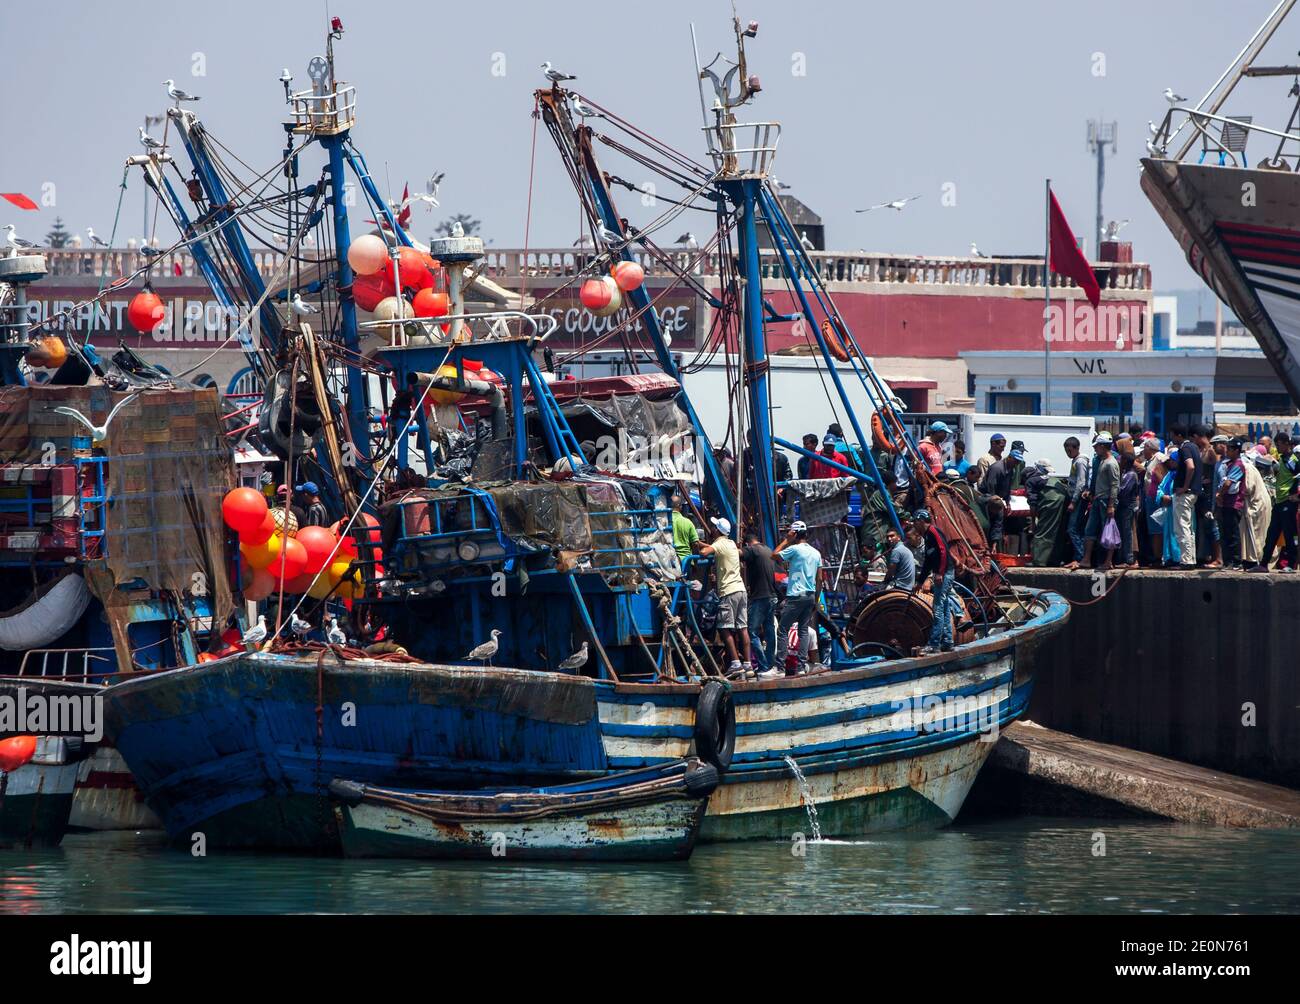 Un arrastrero de pesca llega al muelle para ser recibido por una gran multitud de personas en el concurrido puerto pesquero del Océano Atlántico de Essaouira en Marruecos. Foto de stock